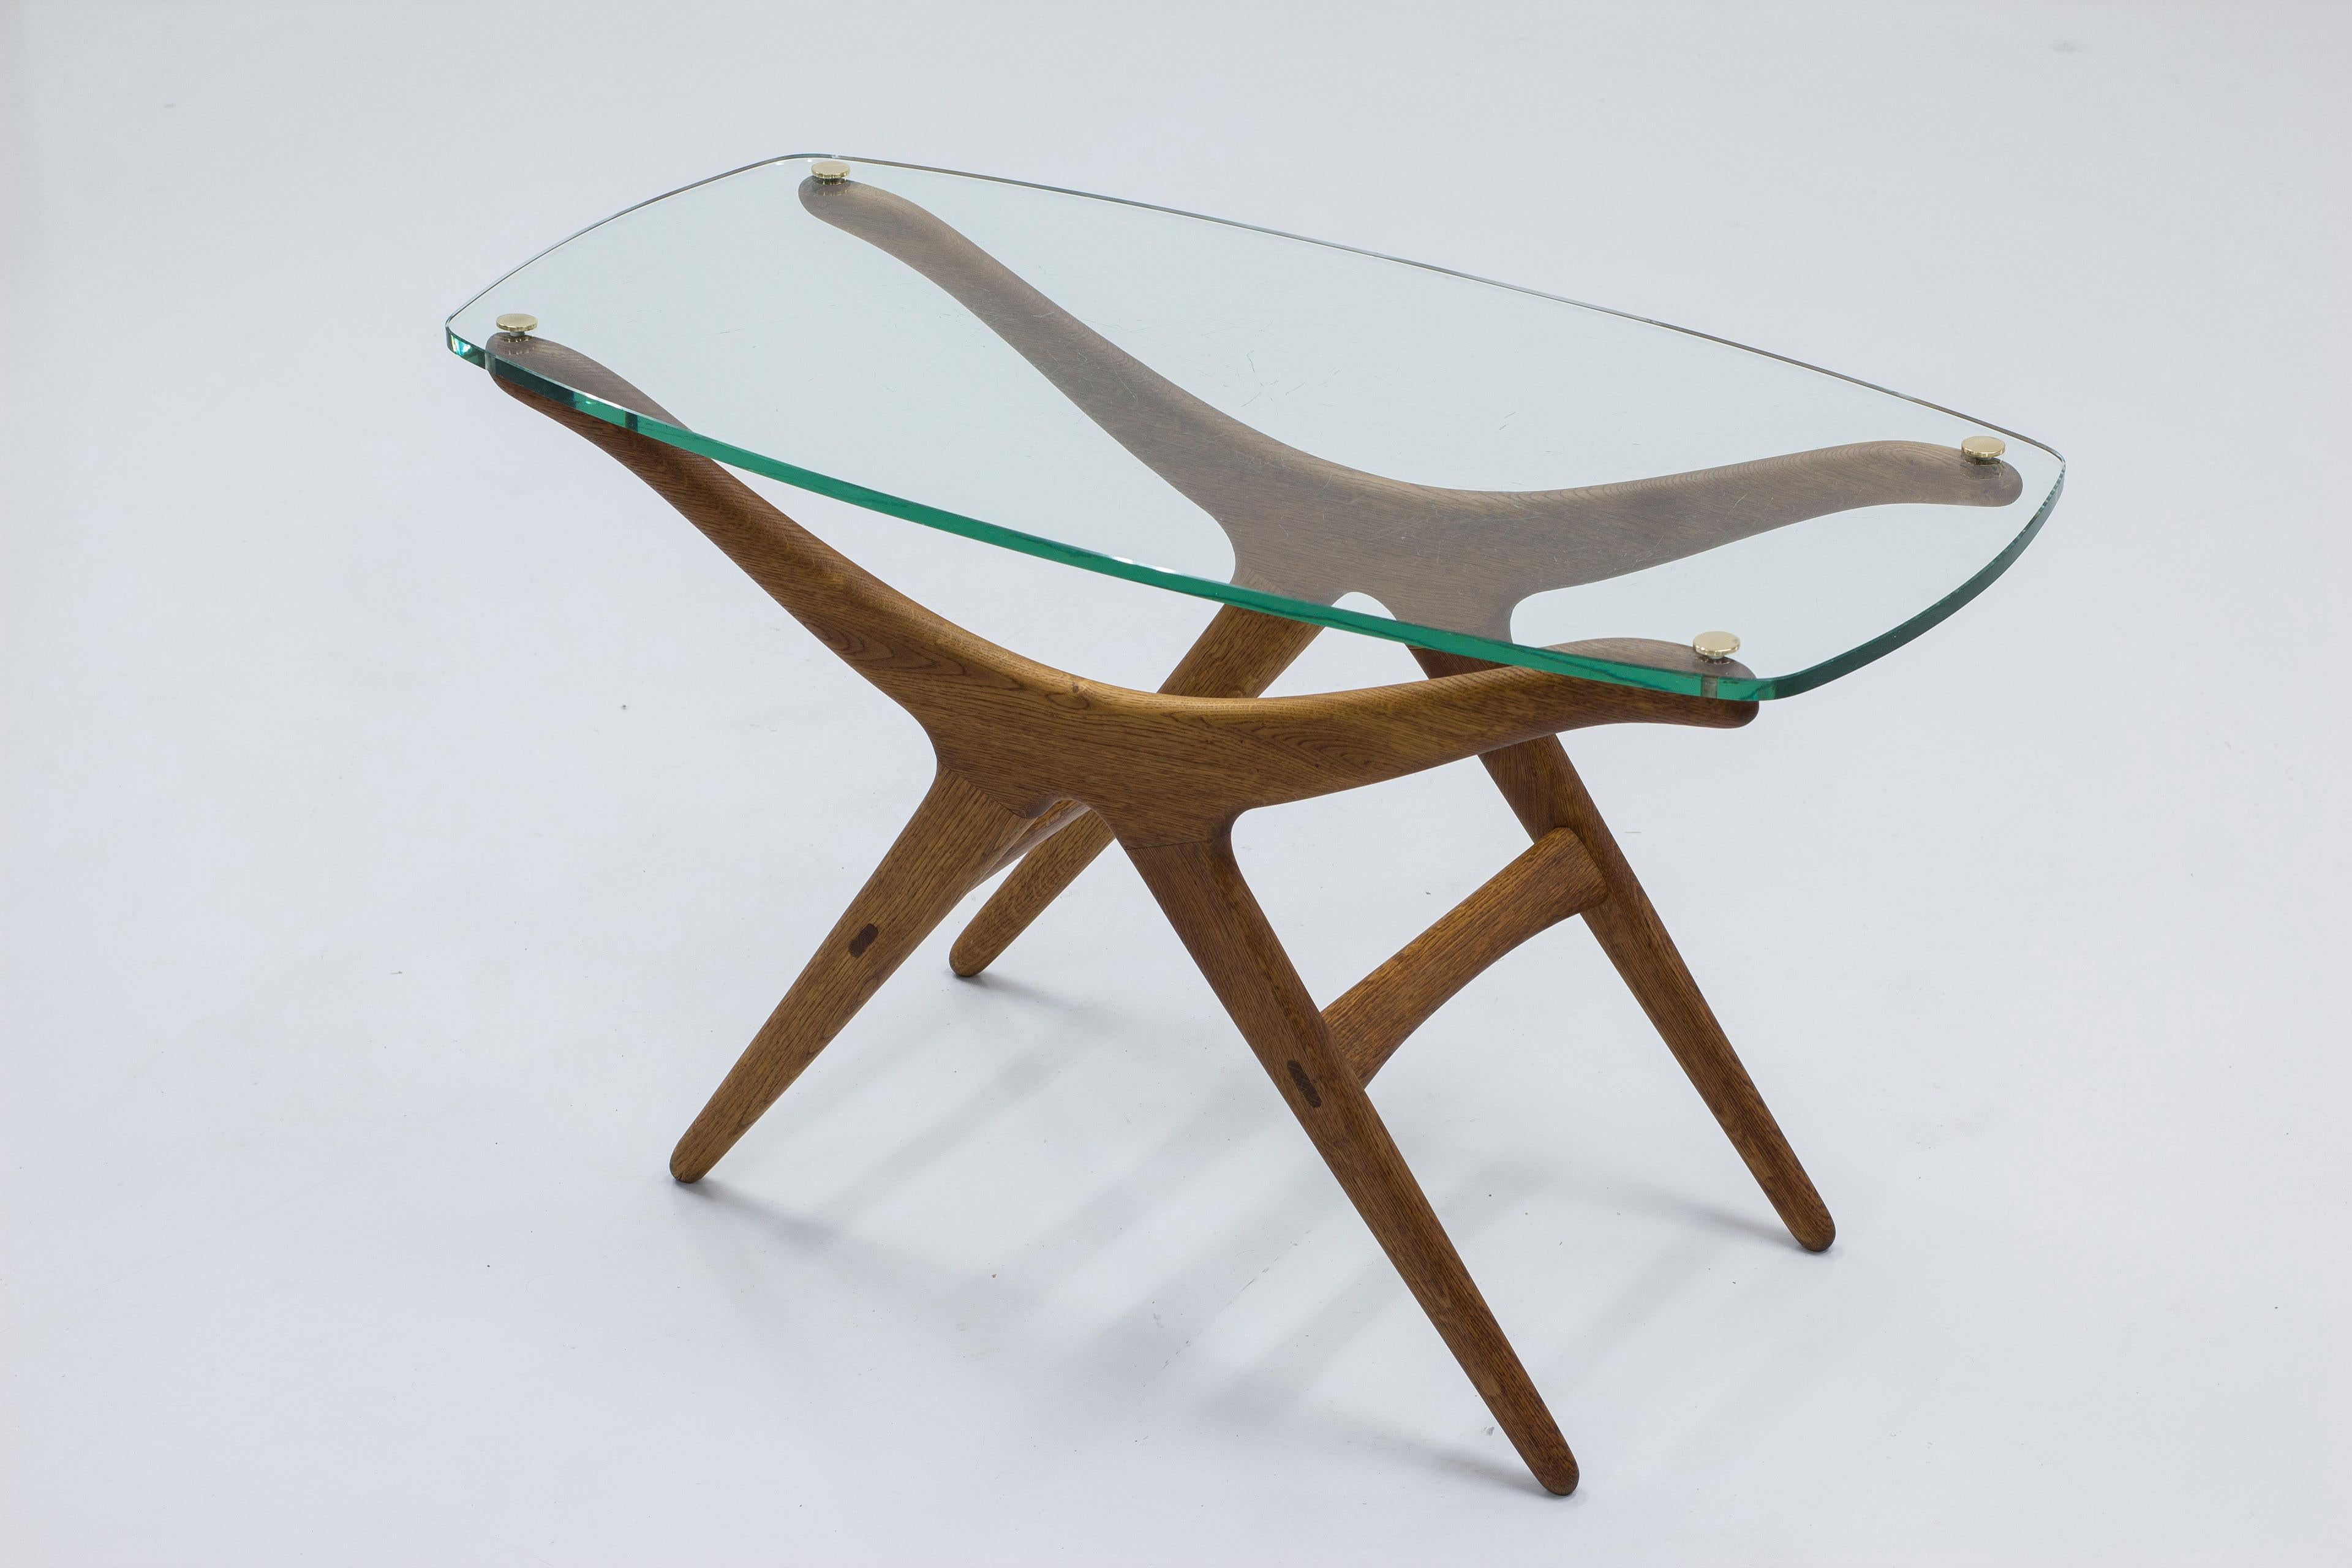 Sehr seltener Tisch, entworfen von H. Brockman Petersen. Hergestellt von der Tischlerei Louis G. Thiersen & Søn im Jahr 1953. Der Tisch wurde 1953 auf der Ausstellung der Cabinetmakers Guild ausgestellt. Der Tisch wurde nach der Ausstellung